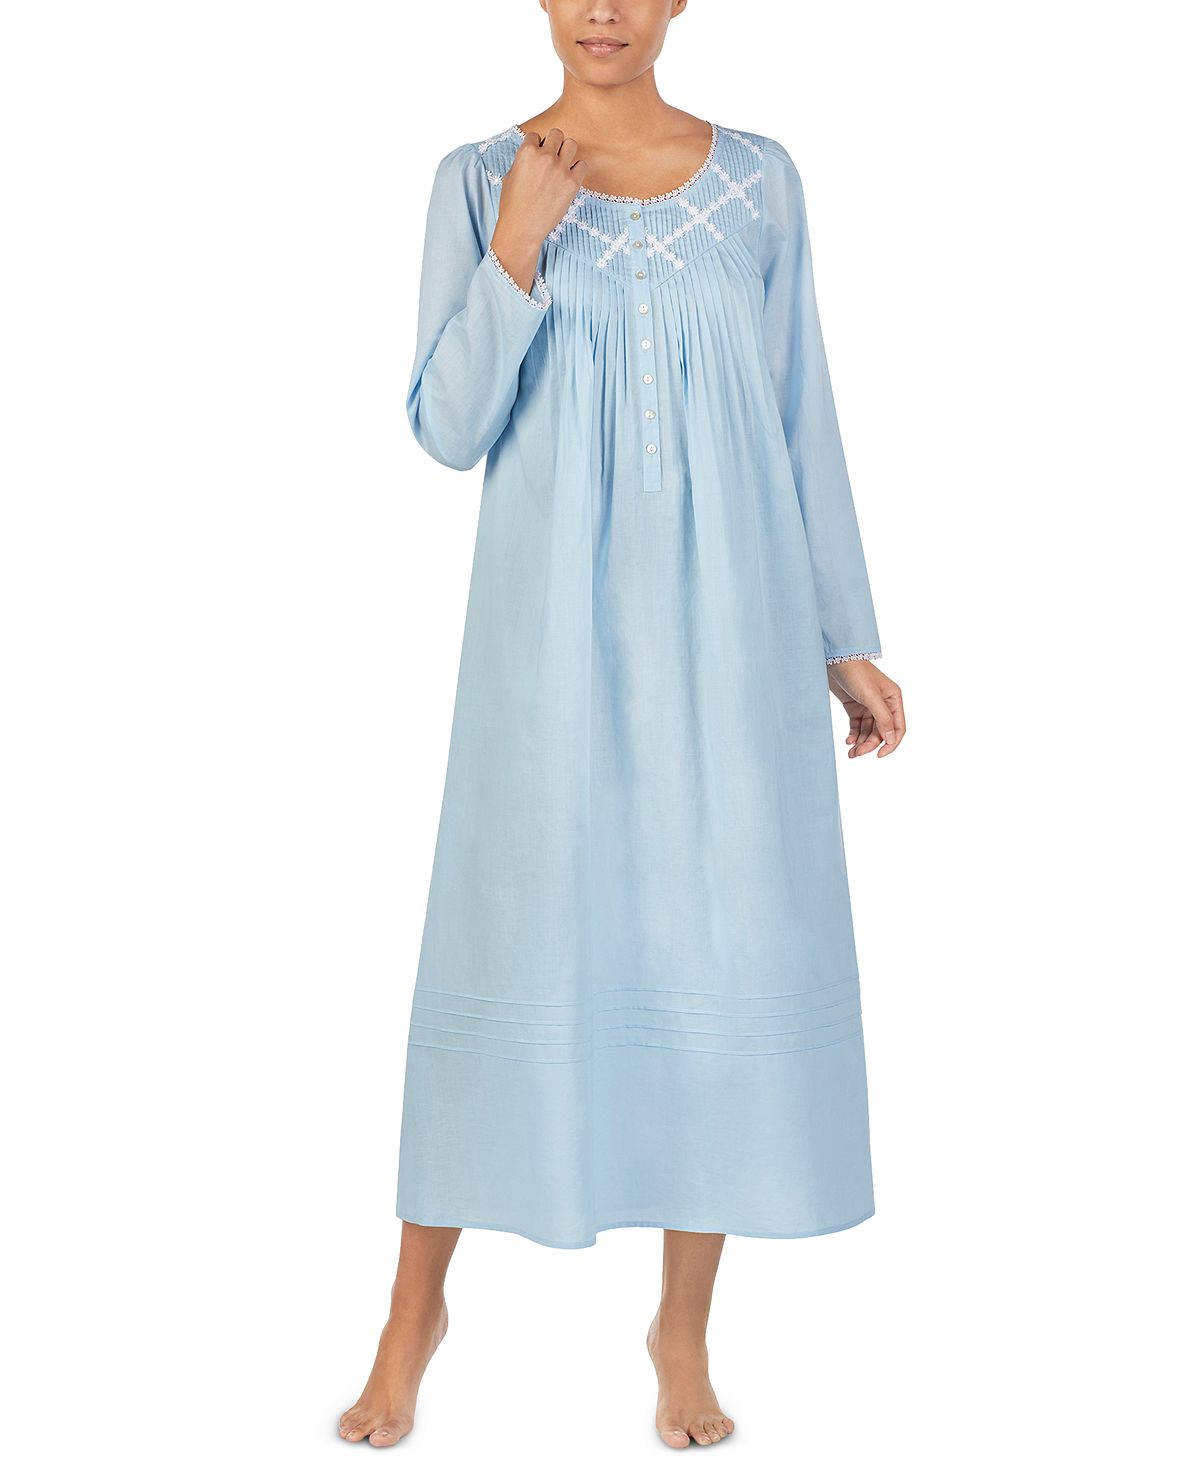 Хлопковая балетная ночная рубашка с защипами Eileen West, синий женская хлопковая ночная рубашка белая хлопковая ночная рубашка без рукавов в американском стиле летняя свободная ночная рубашка принцес